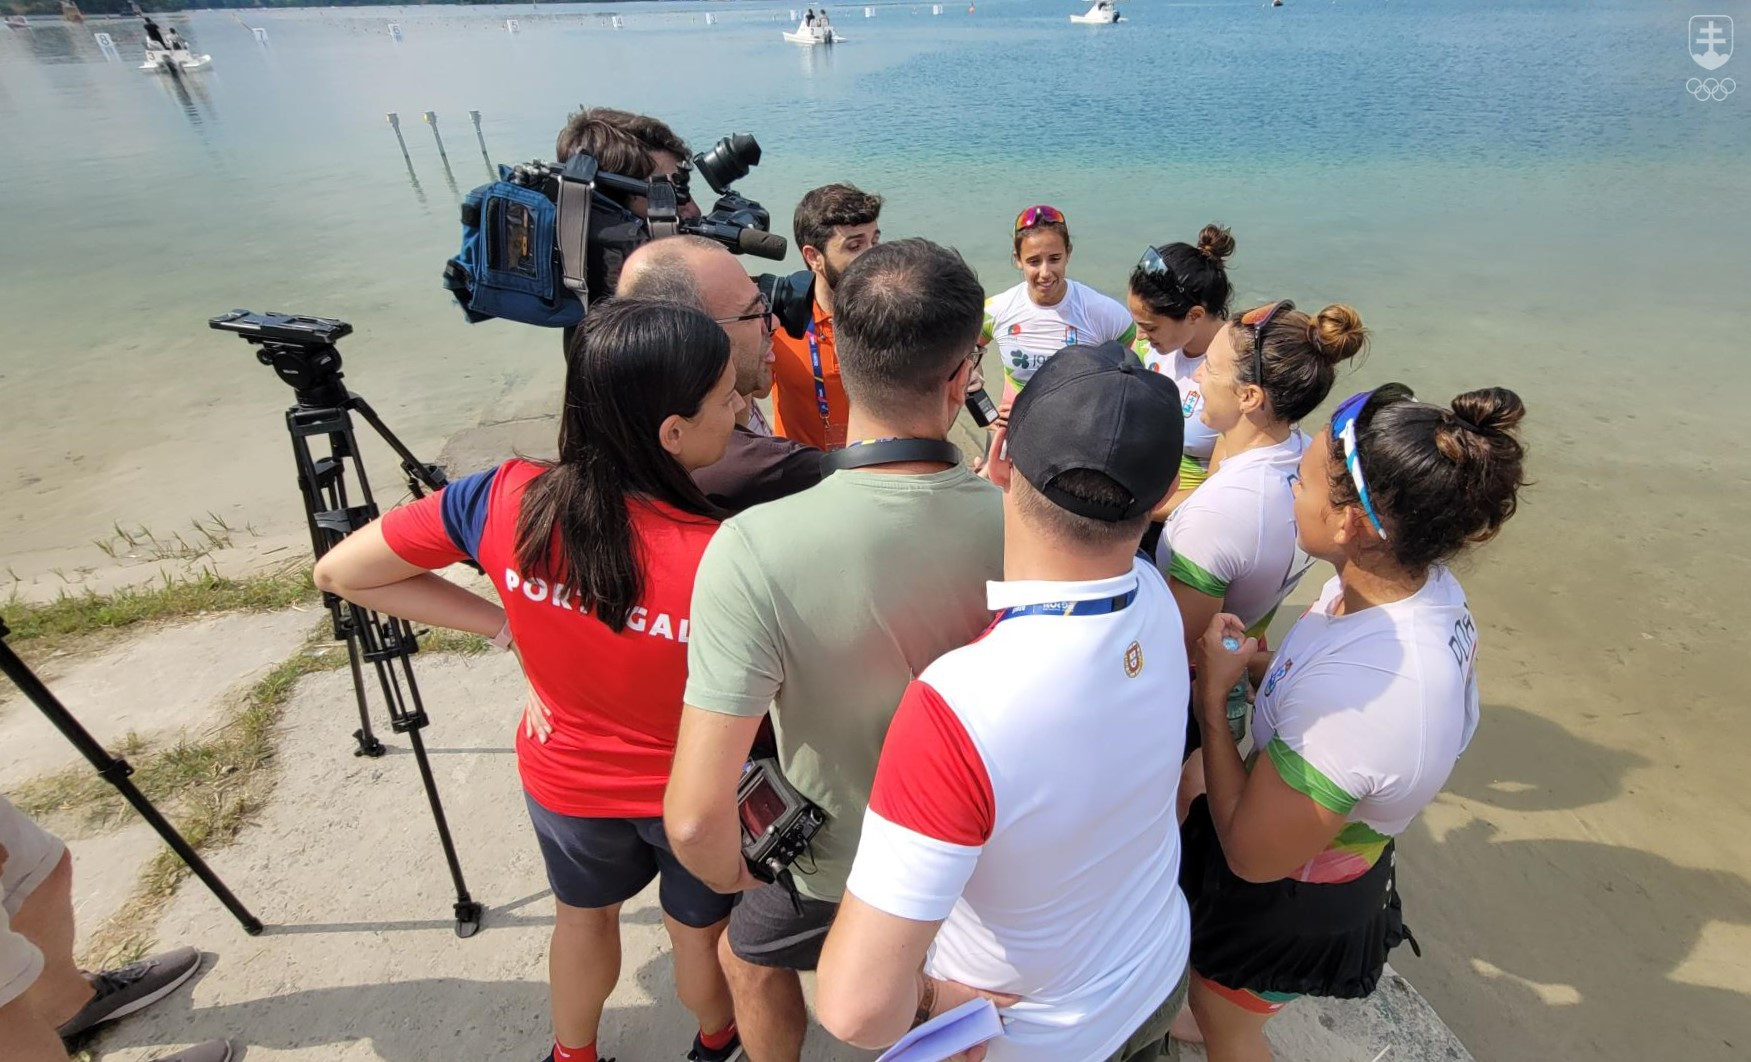 Aj takto vyzerali rozhovory s medailistami z rýchlostnej kanoistike v Krakove-Kryśpinówe. Vyhradená mixzóna na mediálne rozhovory bola taká malá, že portugalskí novinári si utvorili vlastnú priamo na pieskovej pláži...